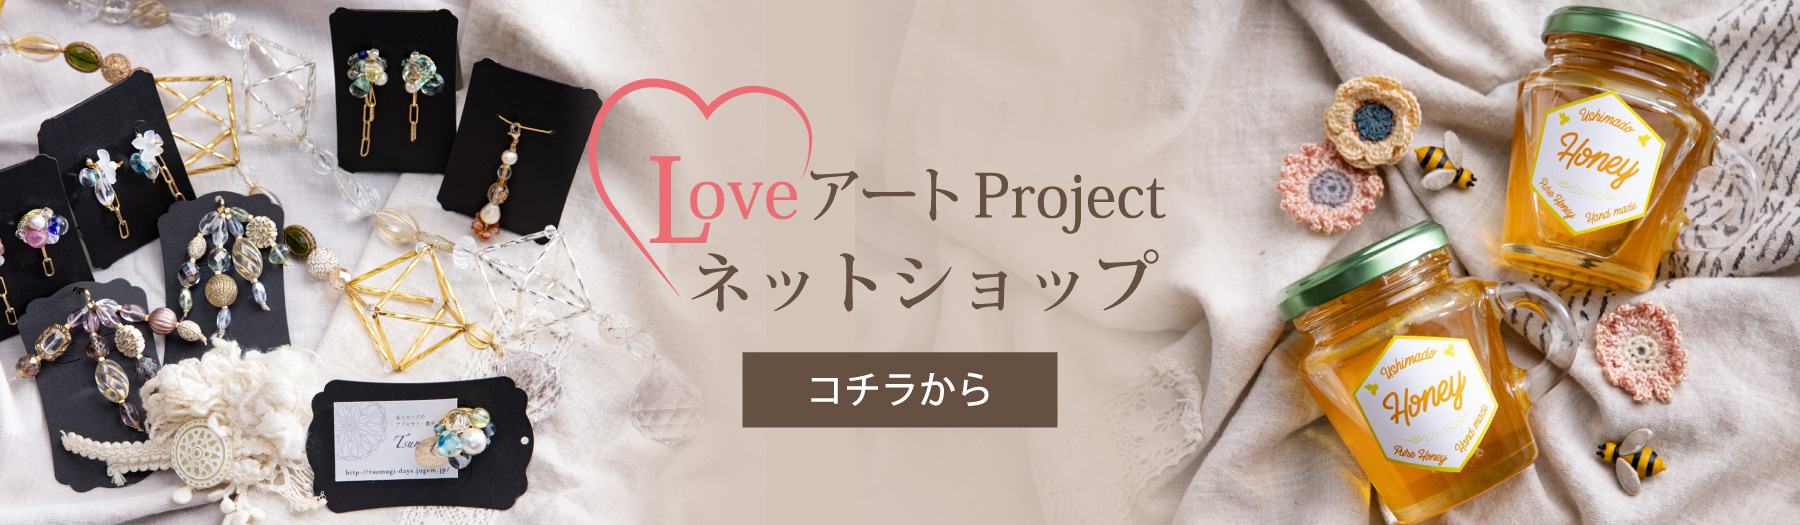 Love アート Project ネットショップ